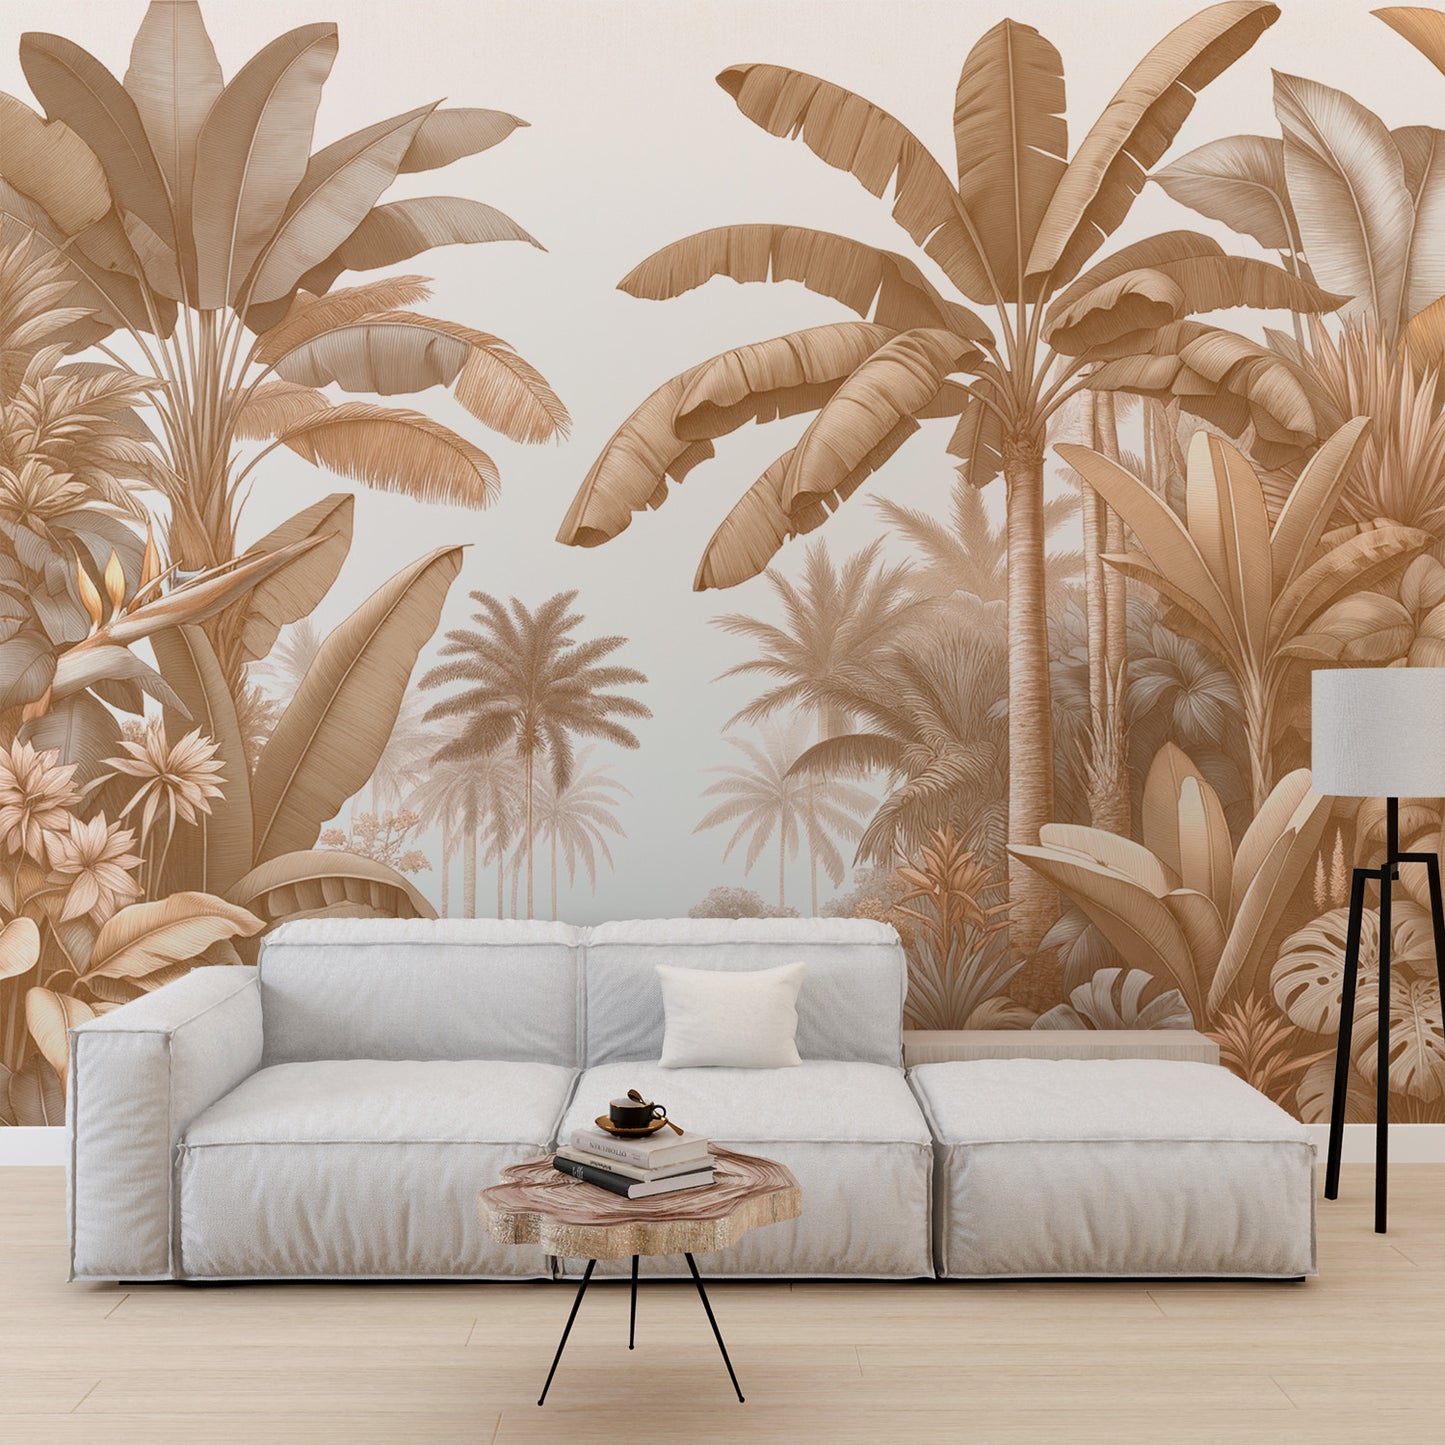 Papier peint jungle beige | Palmiers et bananiers fond blanc